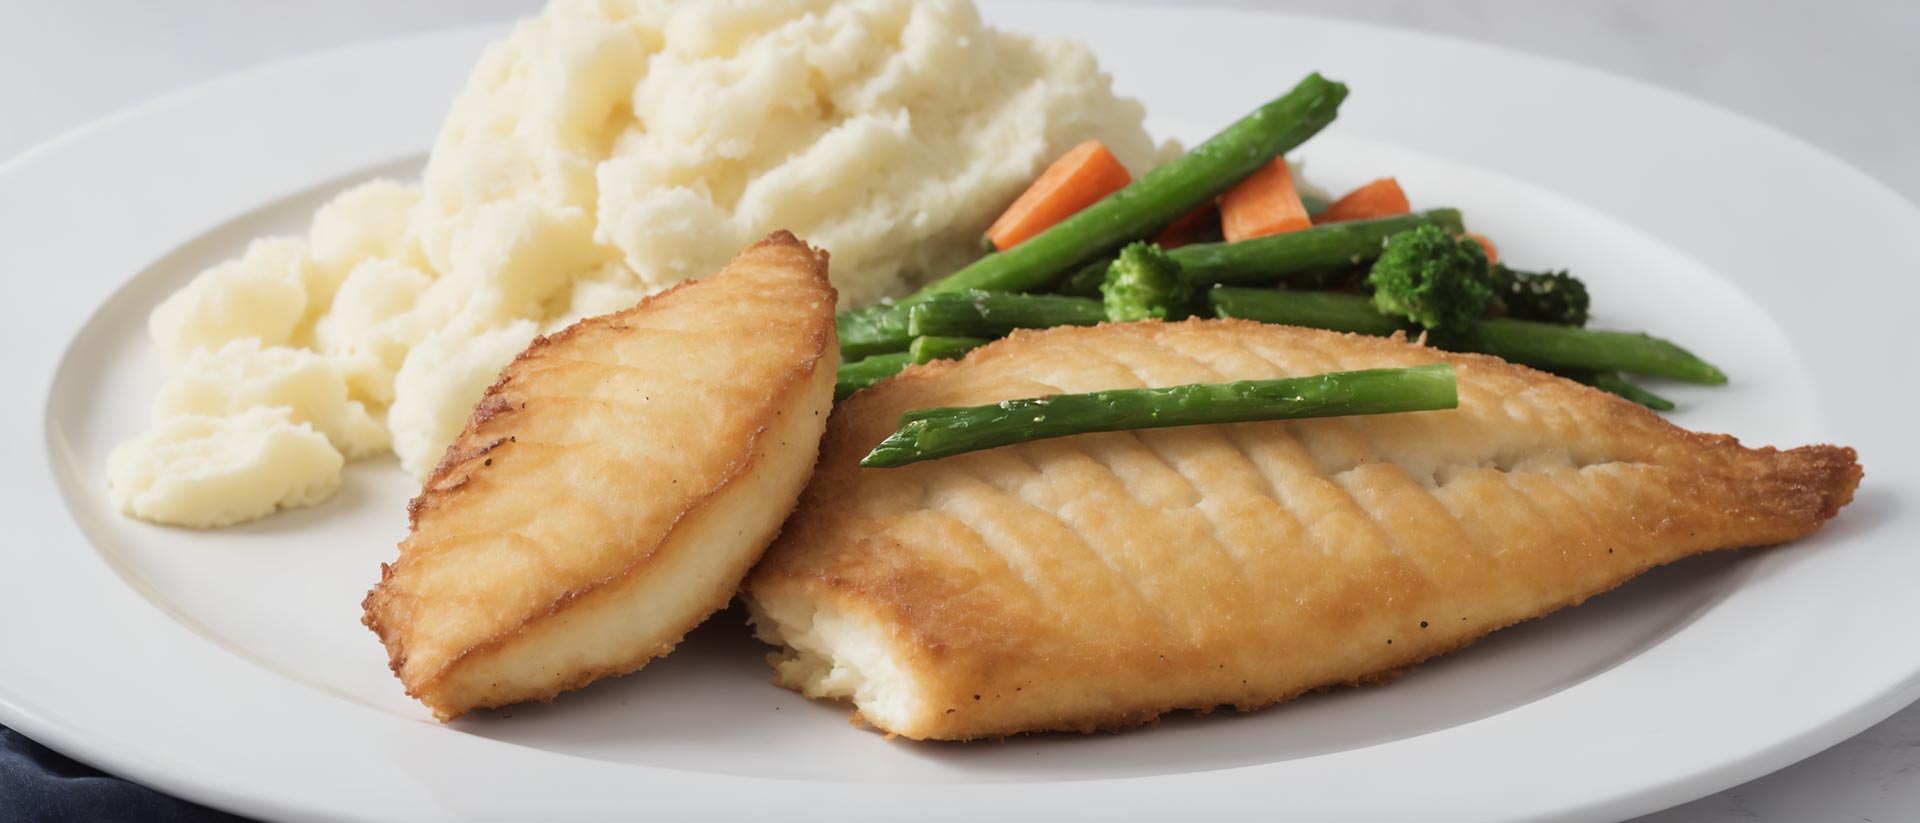 Panierter Fisch auf Teller, als Beilage Kartoffelpüree, dazu Bohnen- und Möhrengemüse